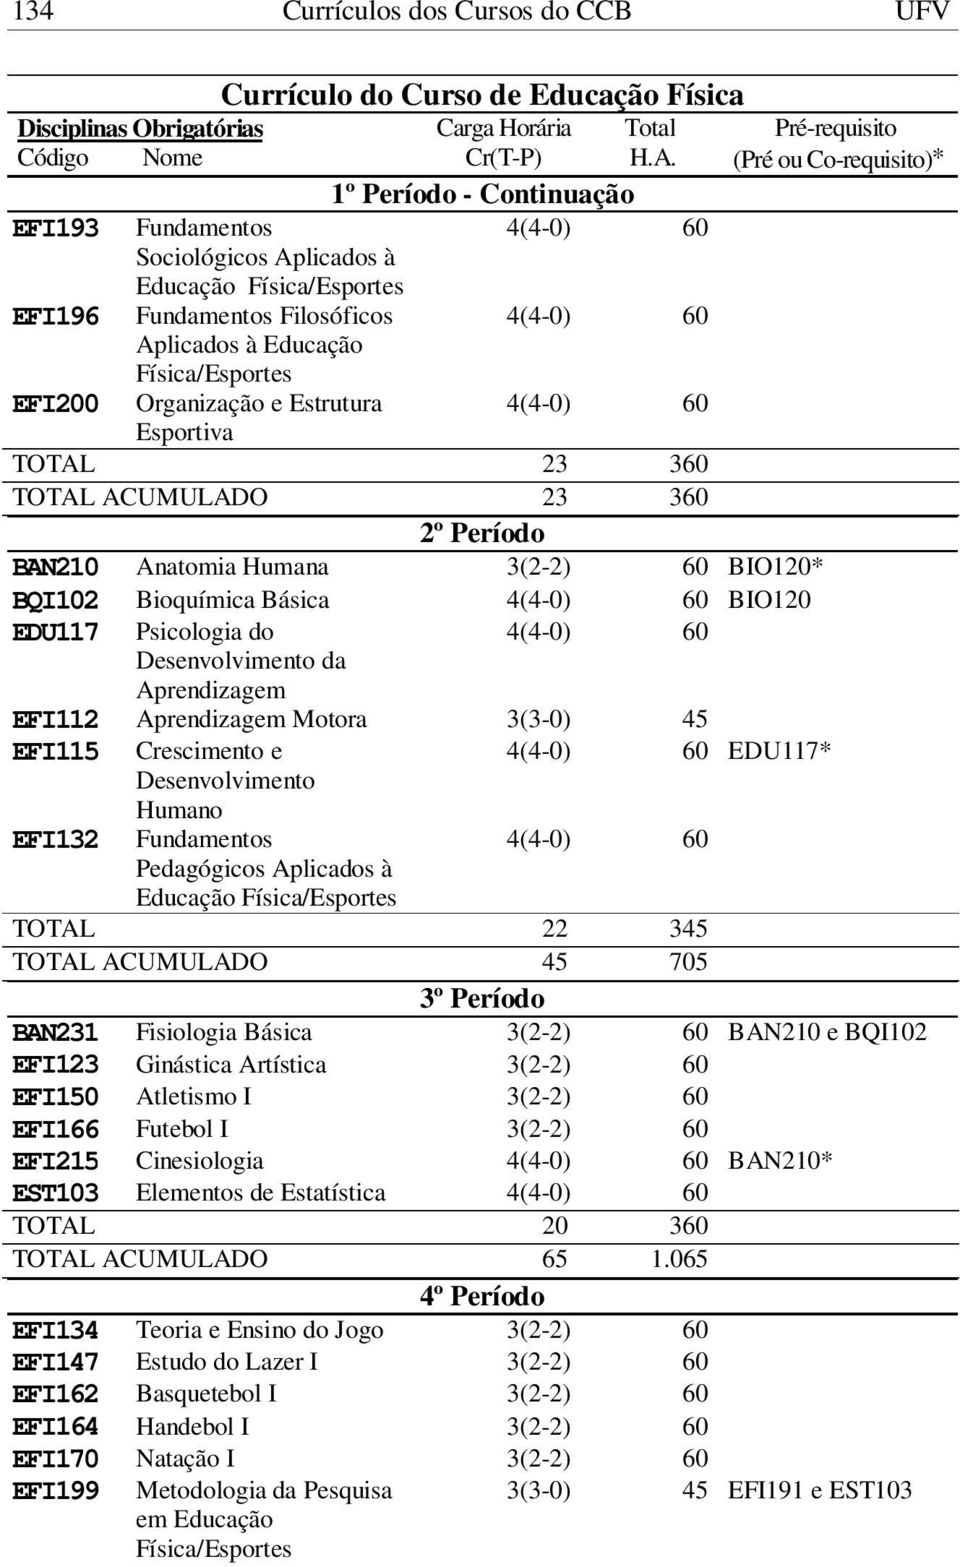 2º Período BAN210 Anatomia Humana 3(2-2) 60 BIO120* BQI102 Bioquímica Básica BIO120 EDU117 Psicologia do Desenvolvimento da Aprendizagem EFI112 Aprendizagem Motora EFI115 Crescimento e